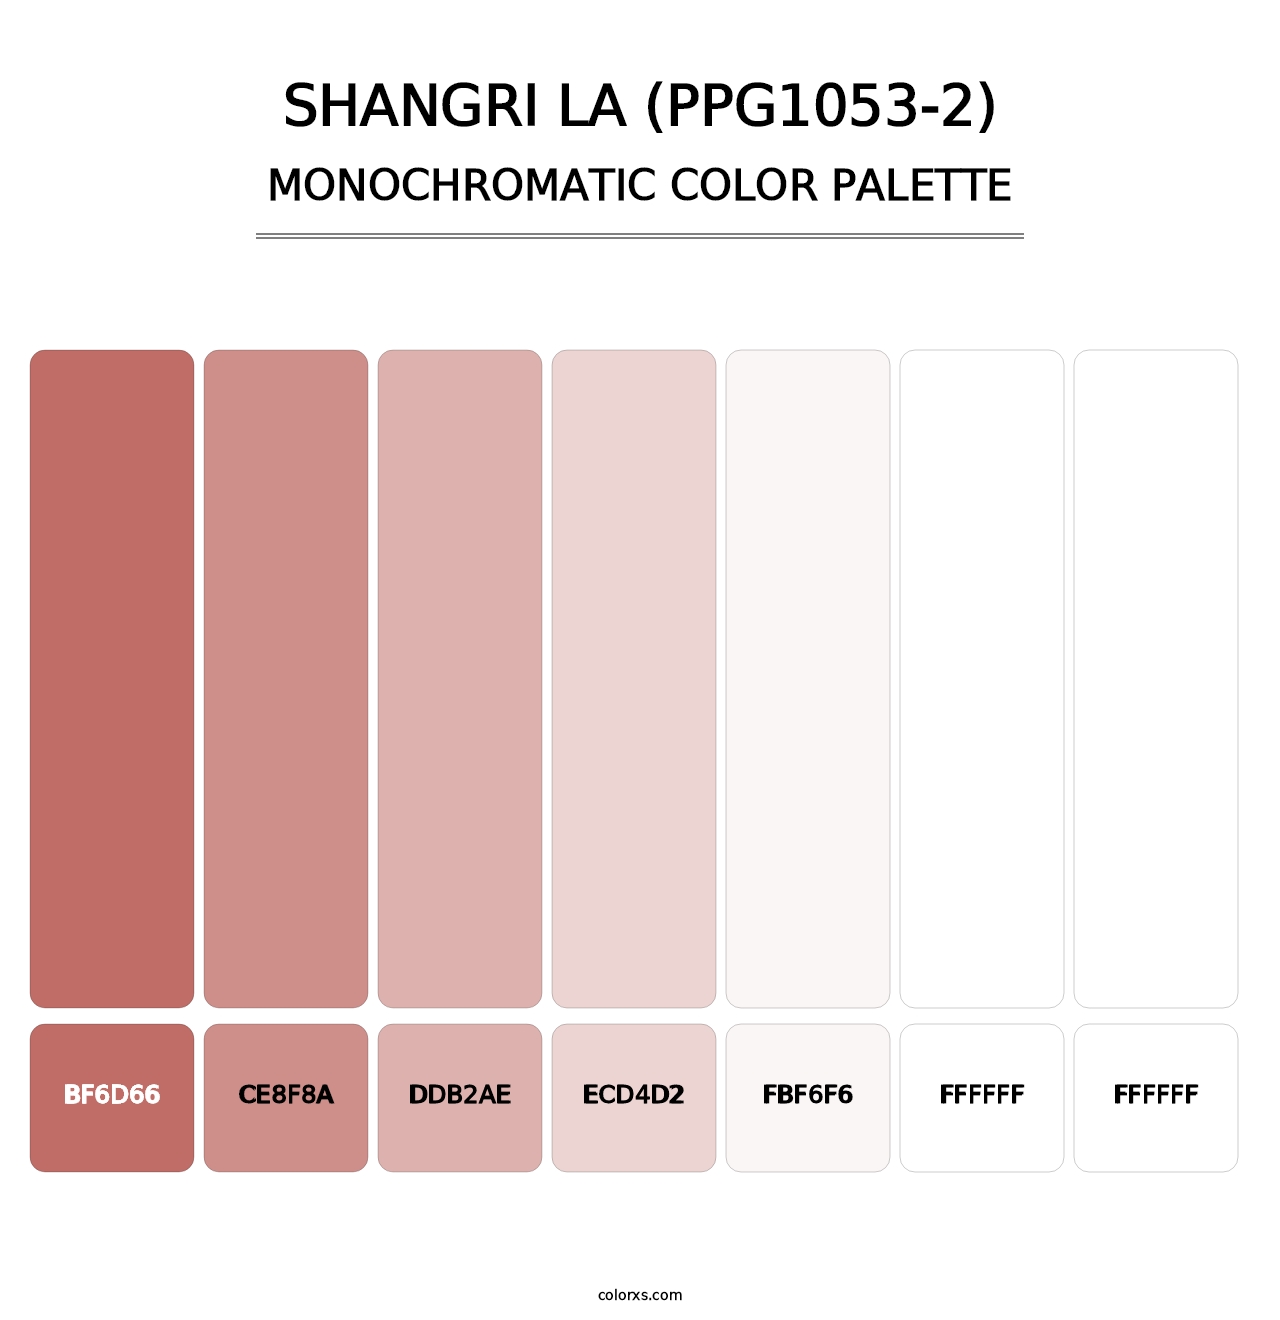 Shangri La (PPG1053-2) - Monochromatic Color Palette